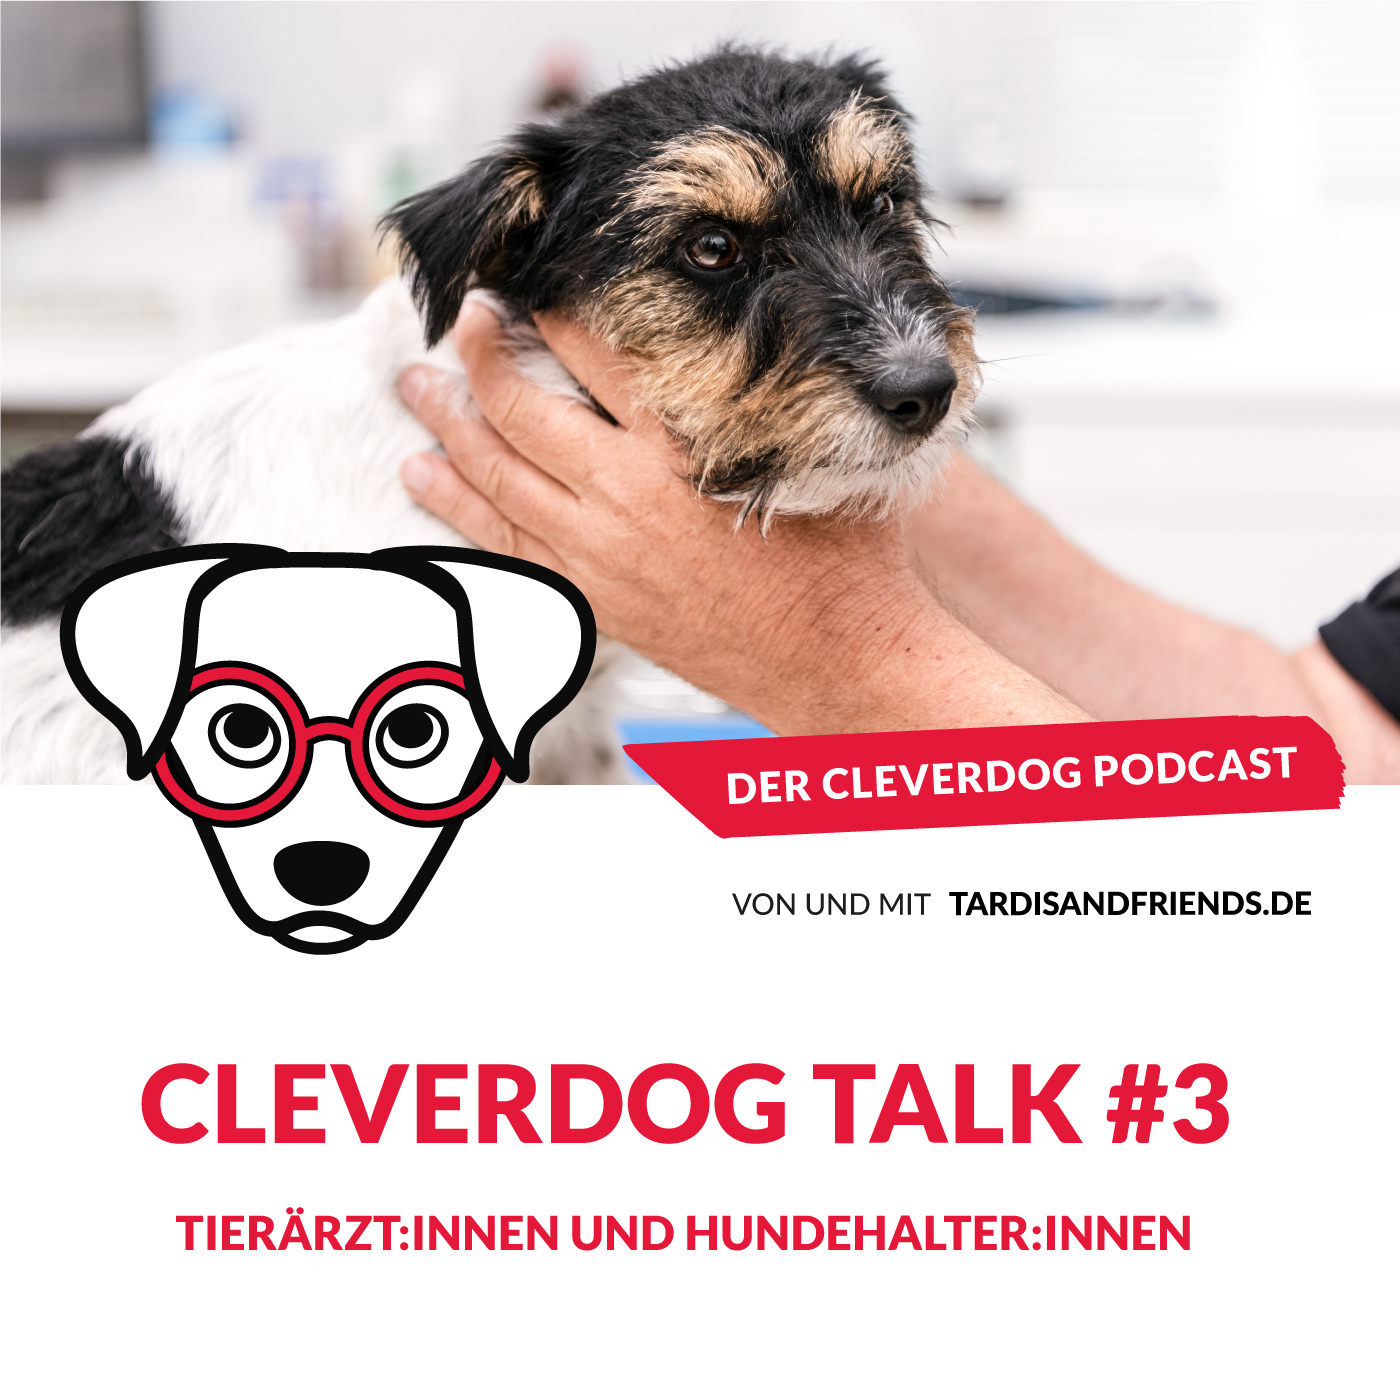 Cleverdog Talk #3 – Tierärzt:innen und Hundehalter:innen